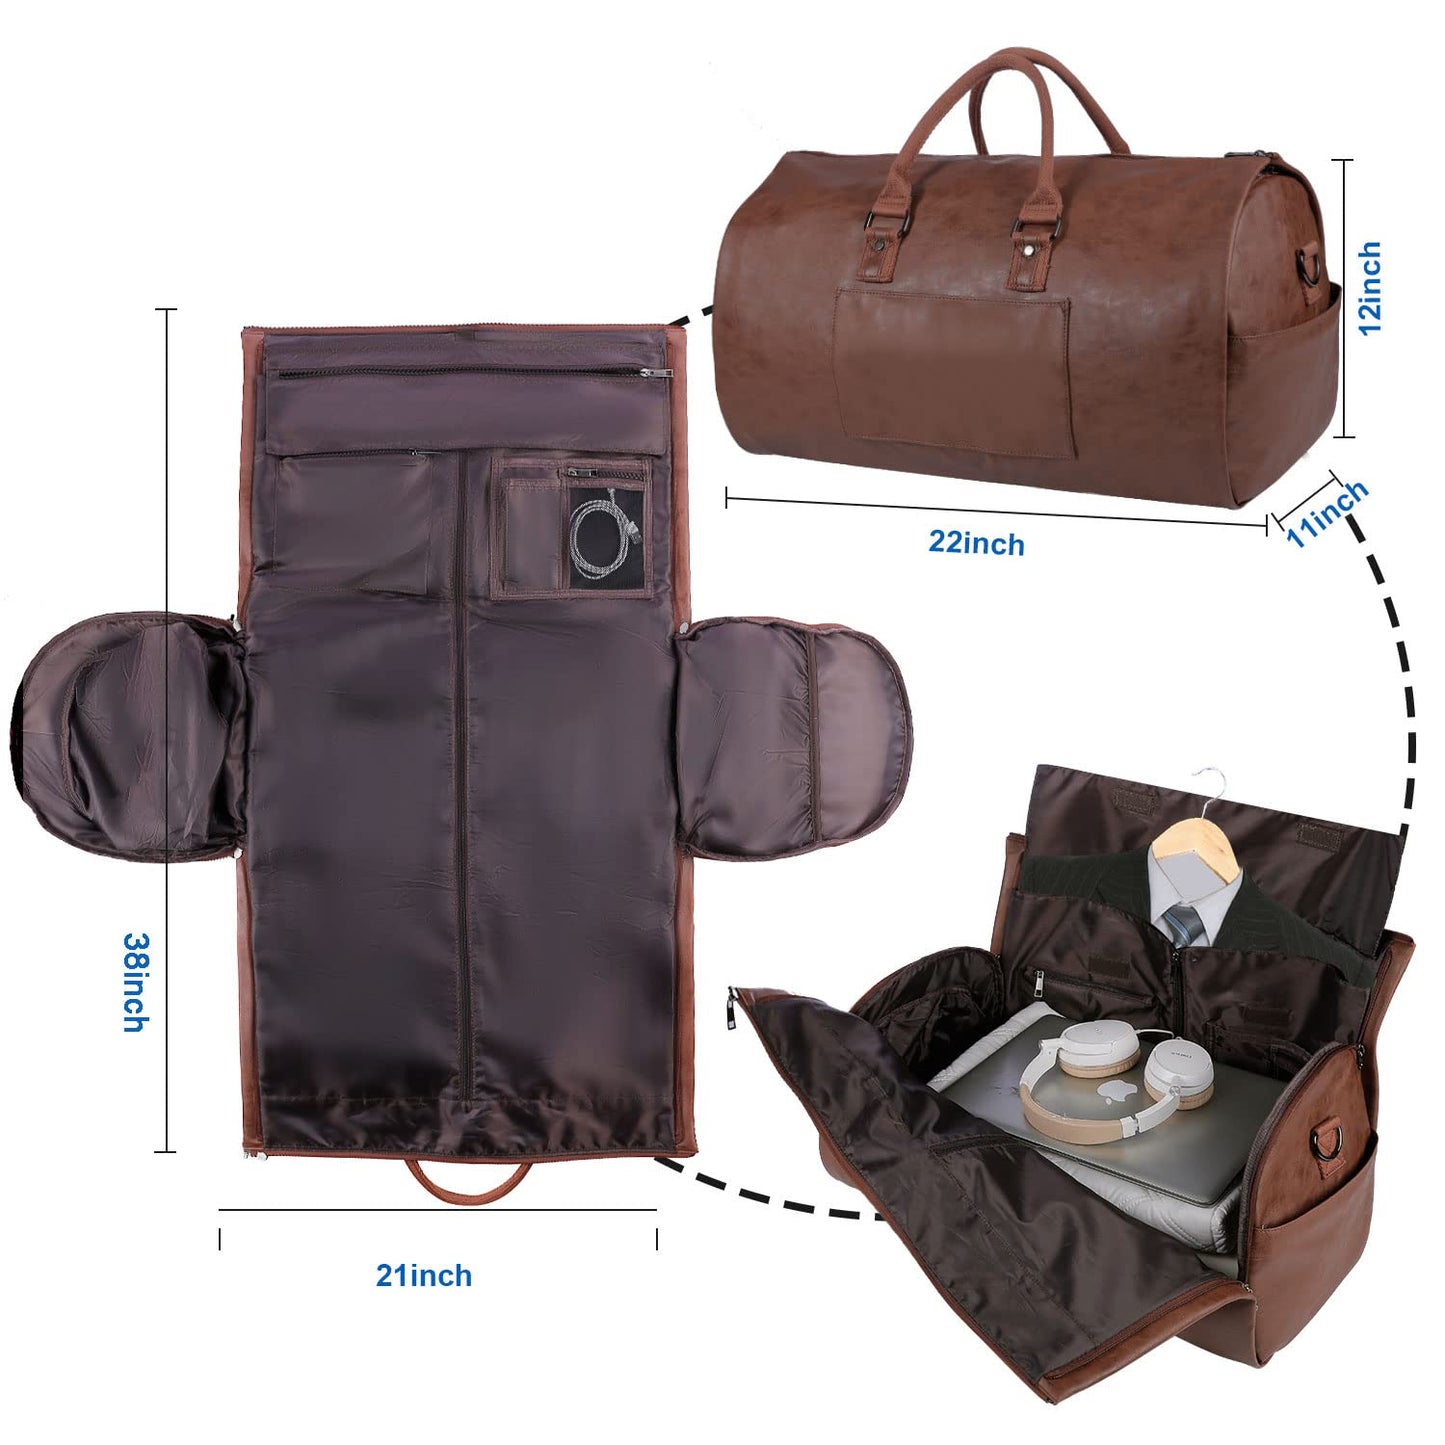 PRODUCTO 649-1 Portatrajes de mano, portatrajes impermeable para hombre para viajes de negocios, bolso de lona grande de cuero con compartimento para zapatos -Marrón